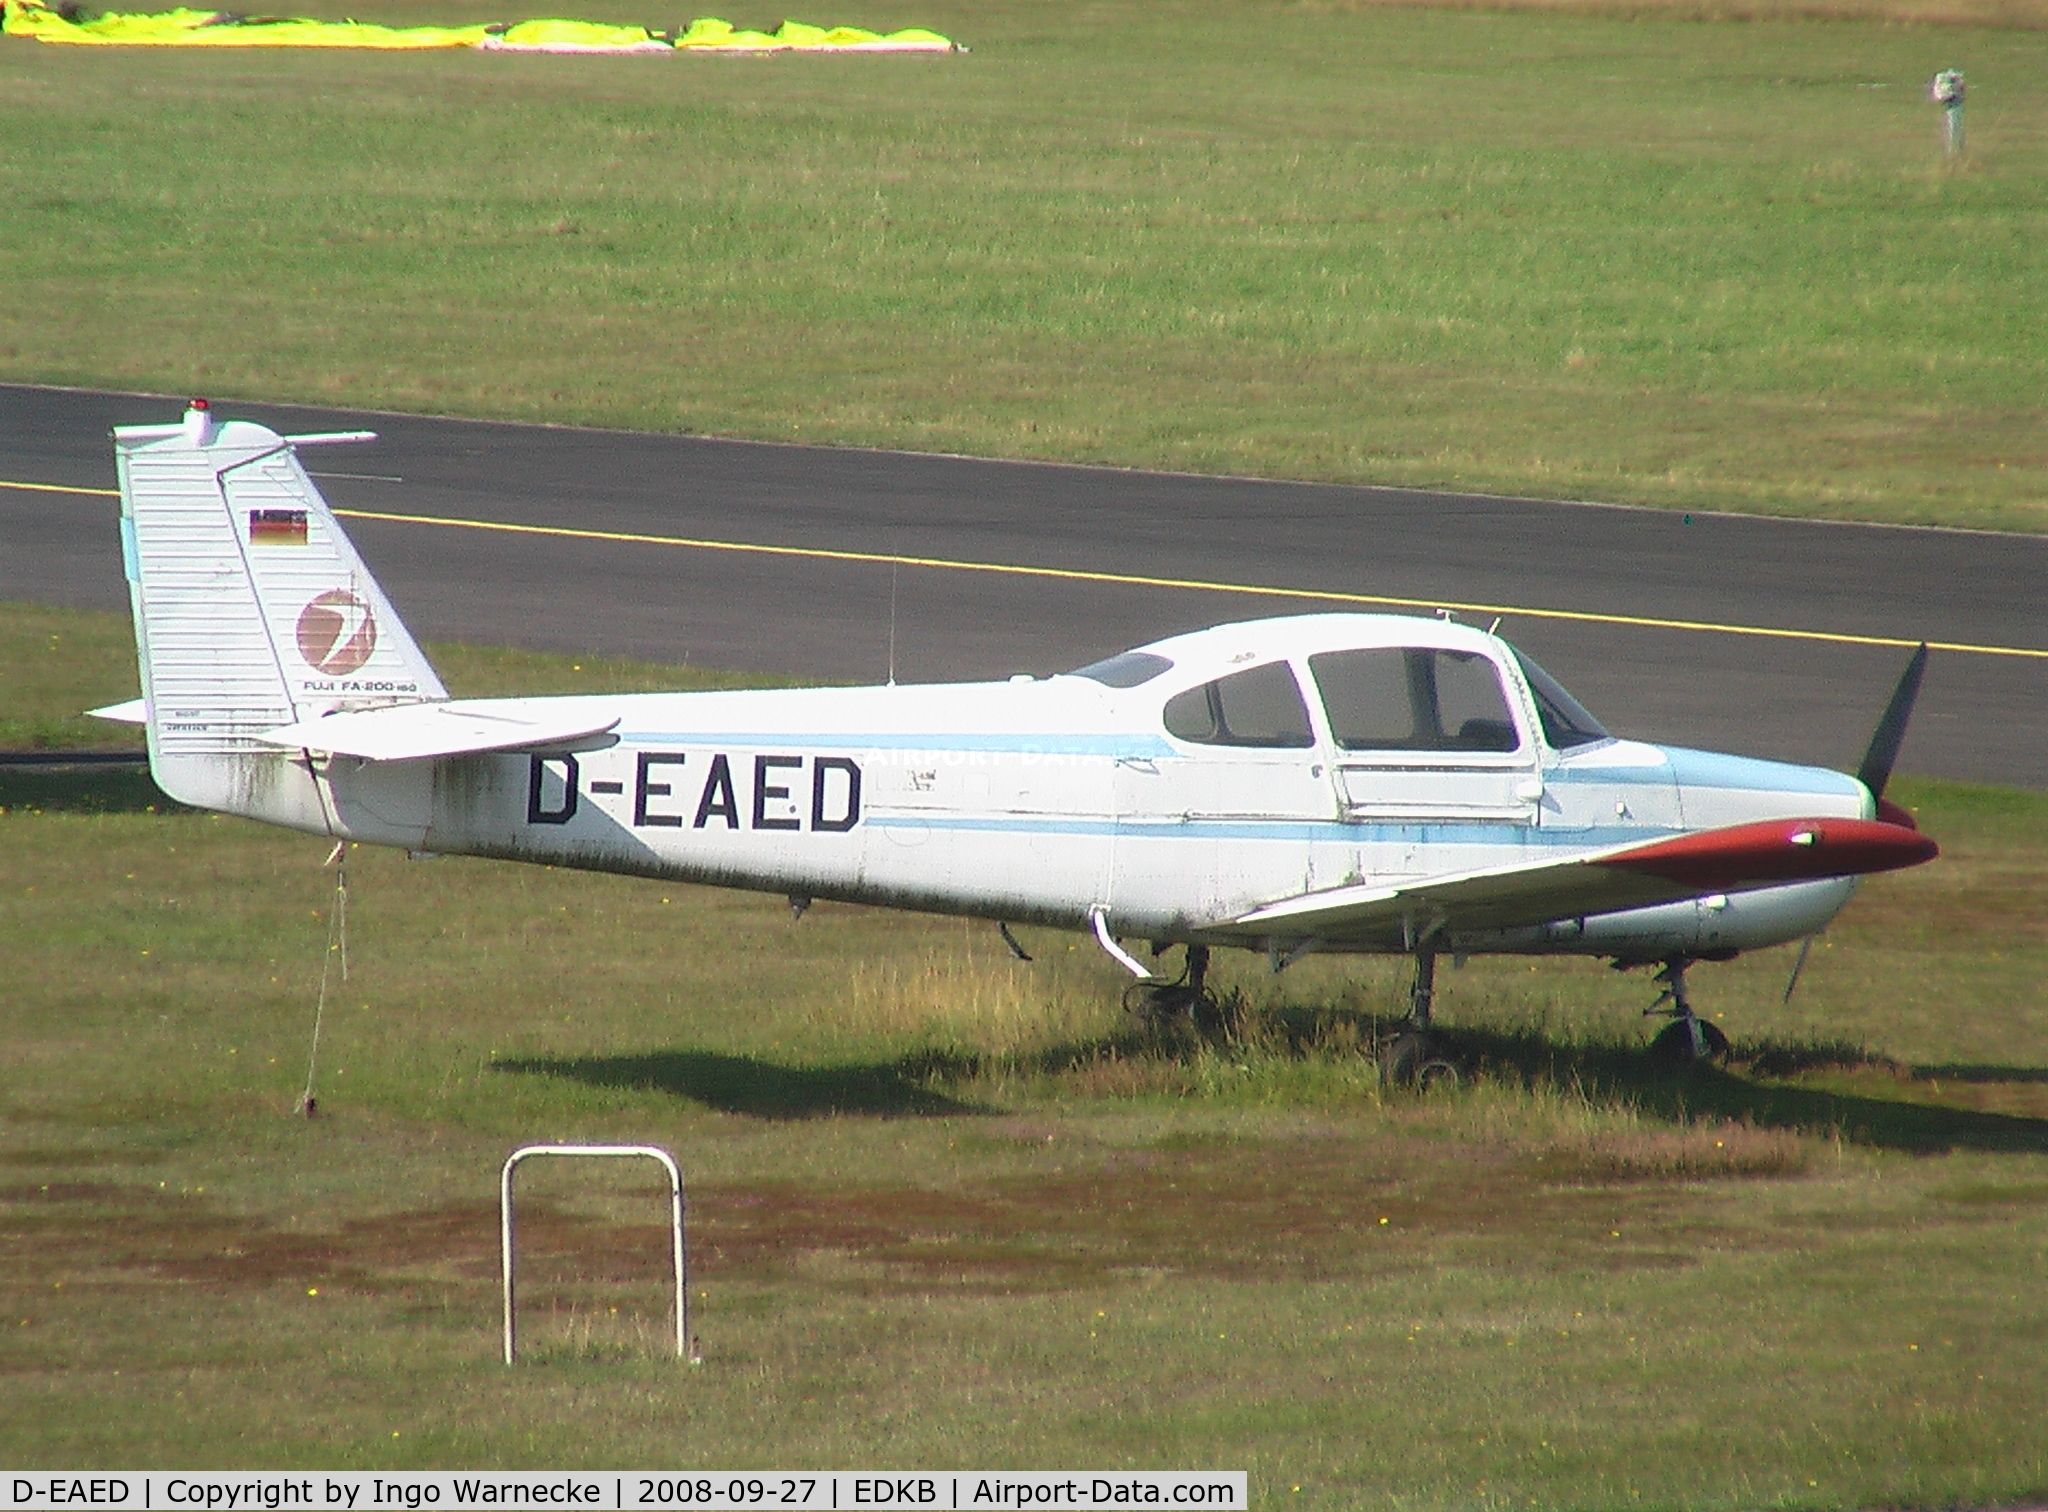 D-EAED, Fuji FA-200-160 Aero Subaru C/N 77, Fuji FA-200-160 Aero Subaru at Bonn-Hangelar airfield